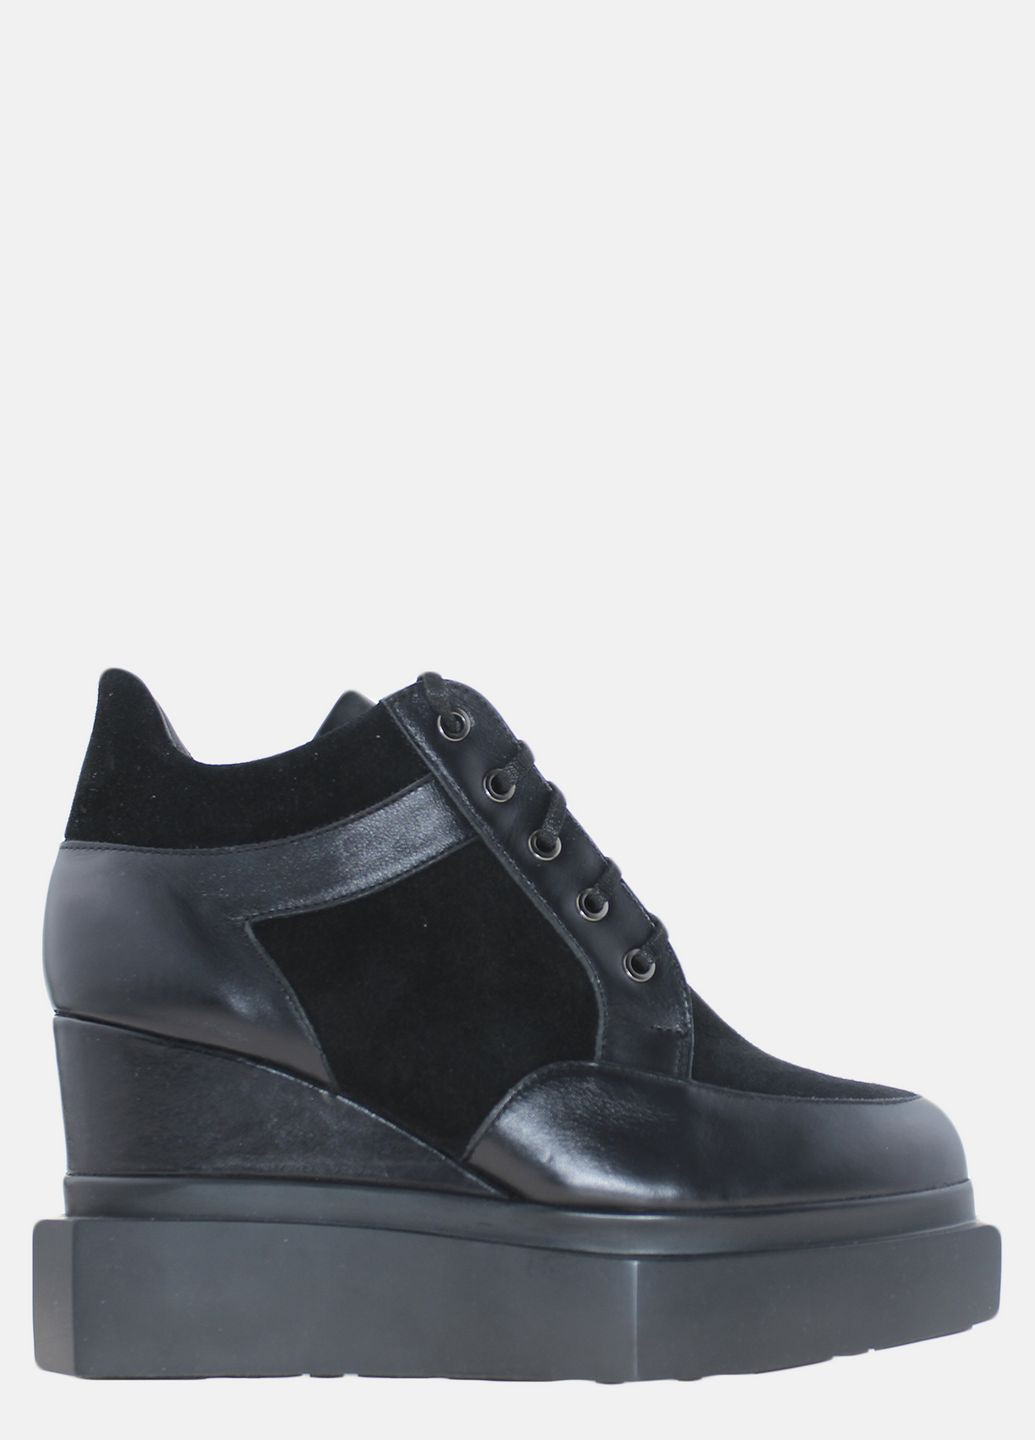 Осенние ботинки elmira rt6-247 черный Top Shoes из натуральной замши